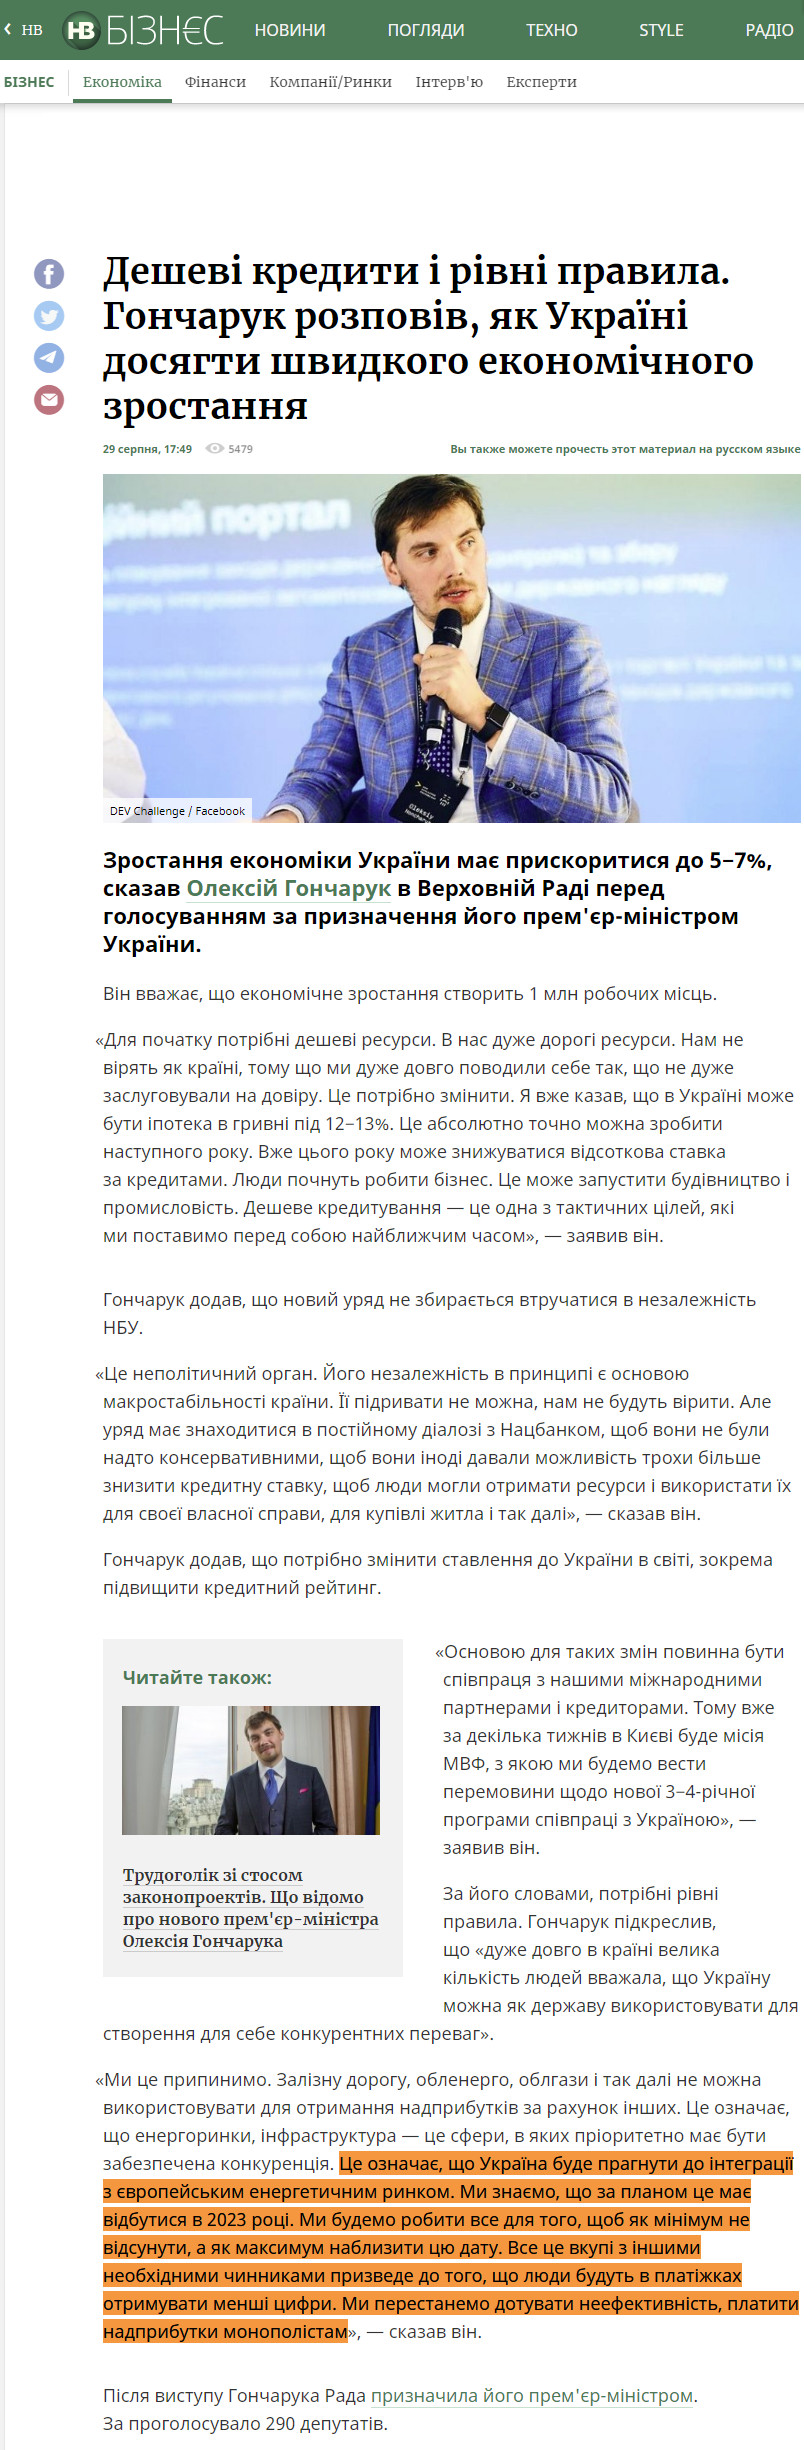 https://biz.nv.ua/ukr/economics/goncharuk-rozpoviv-v-radi-yak-ukrajini-dosyagti-shvidkogo-ekonomichnogo-zrostannya-novini-ukrajini-50039880.html